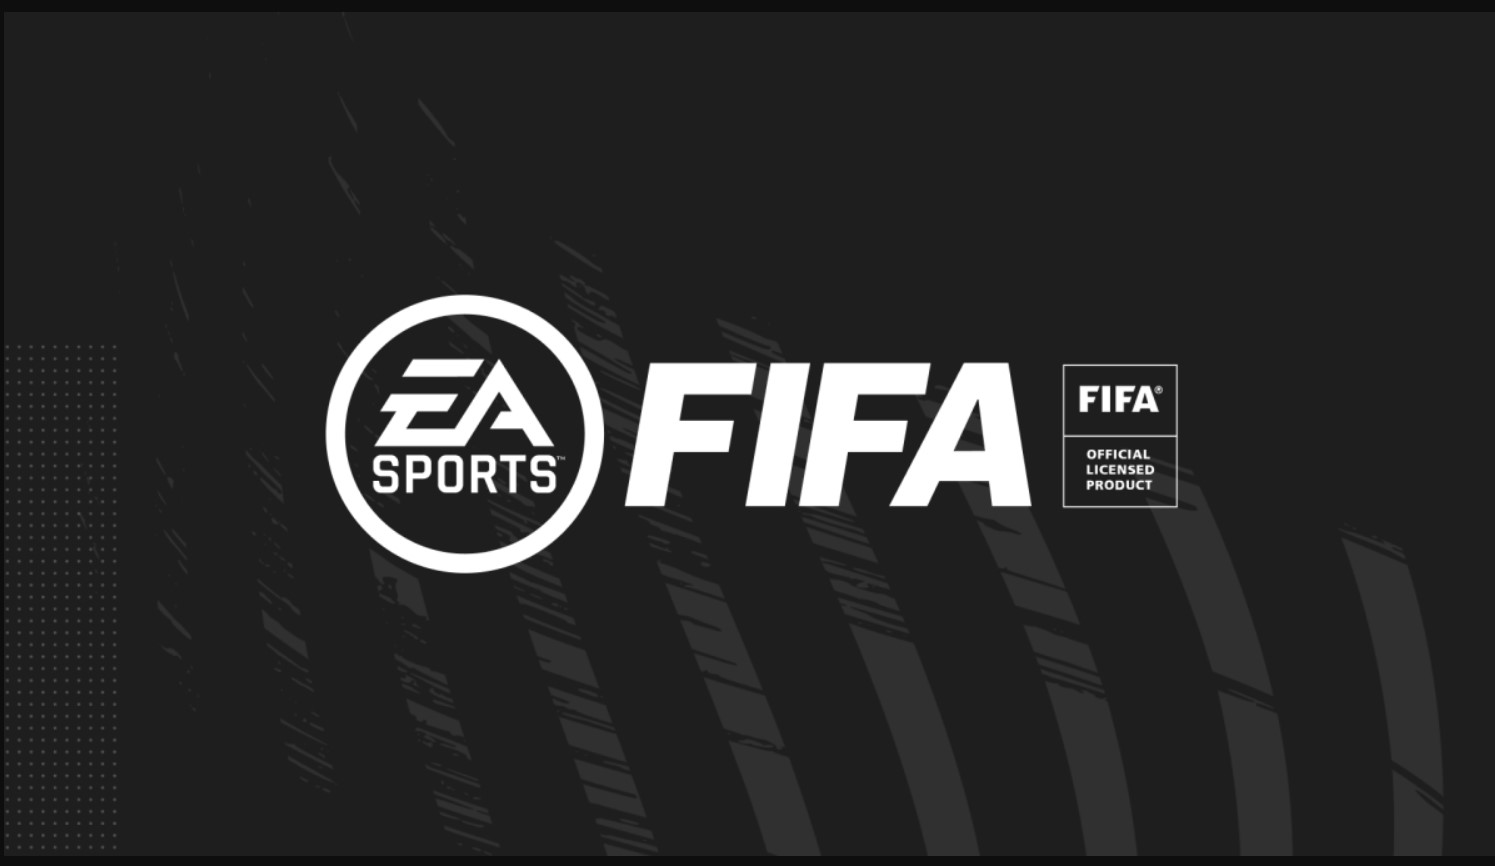 Uma das franquias mais icônicas da indústria terá uma aparência muito diferente. A partir do próximo ano, a franquia será conhecida como "EA SPORTS FC".